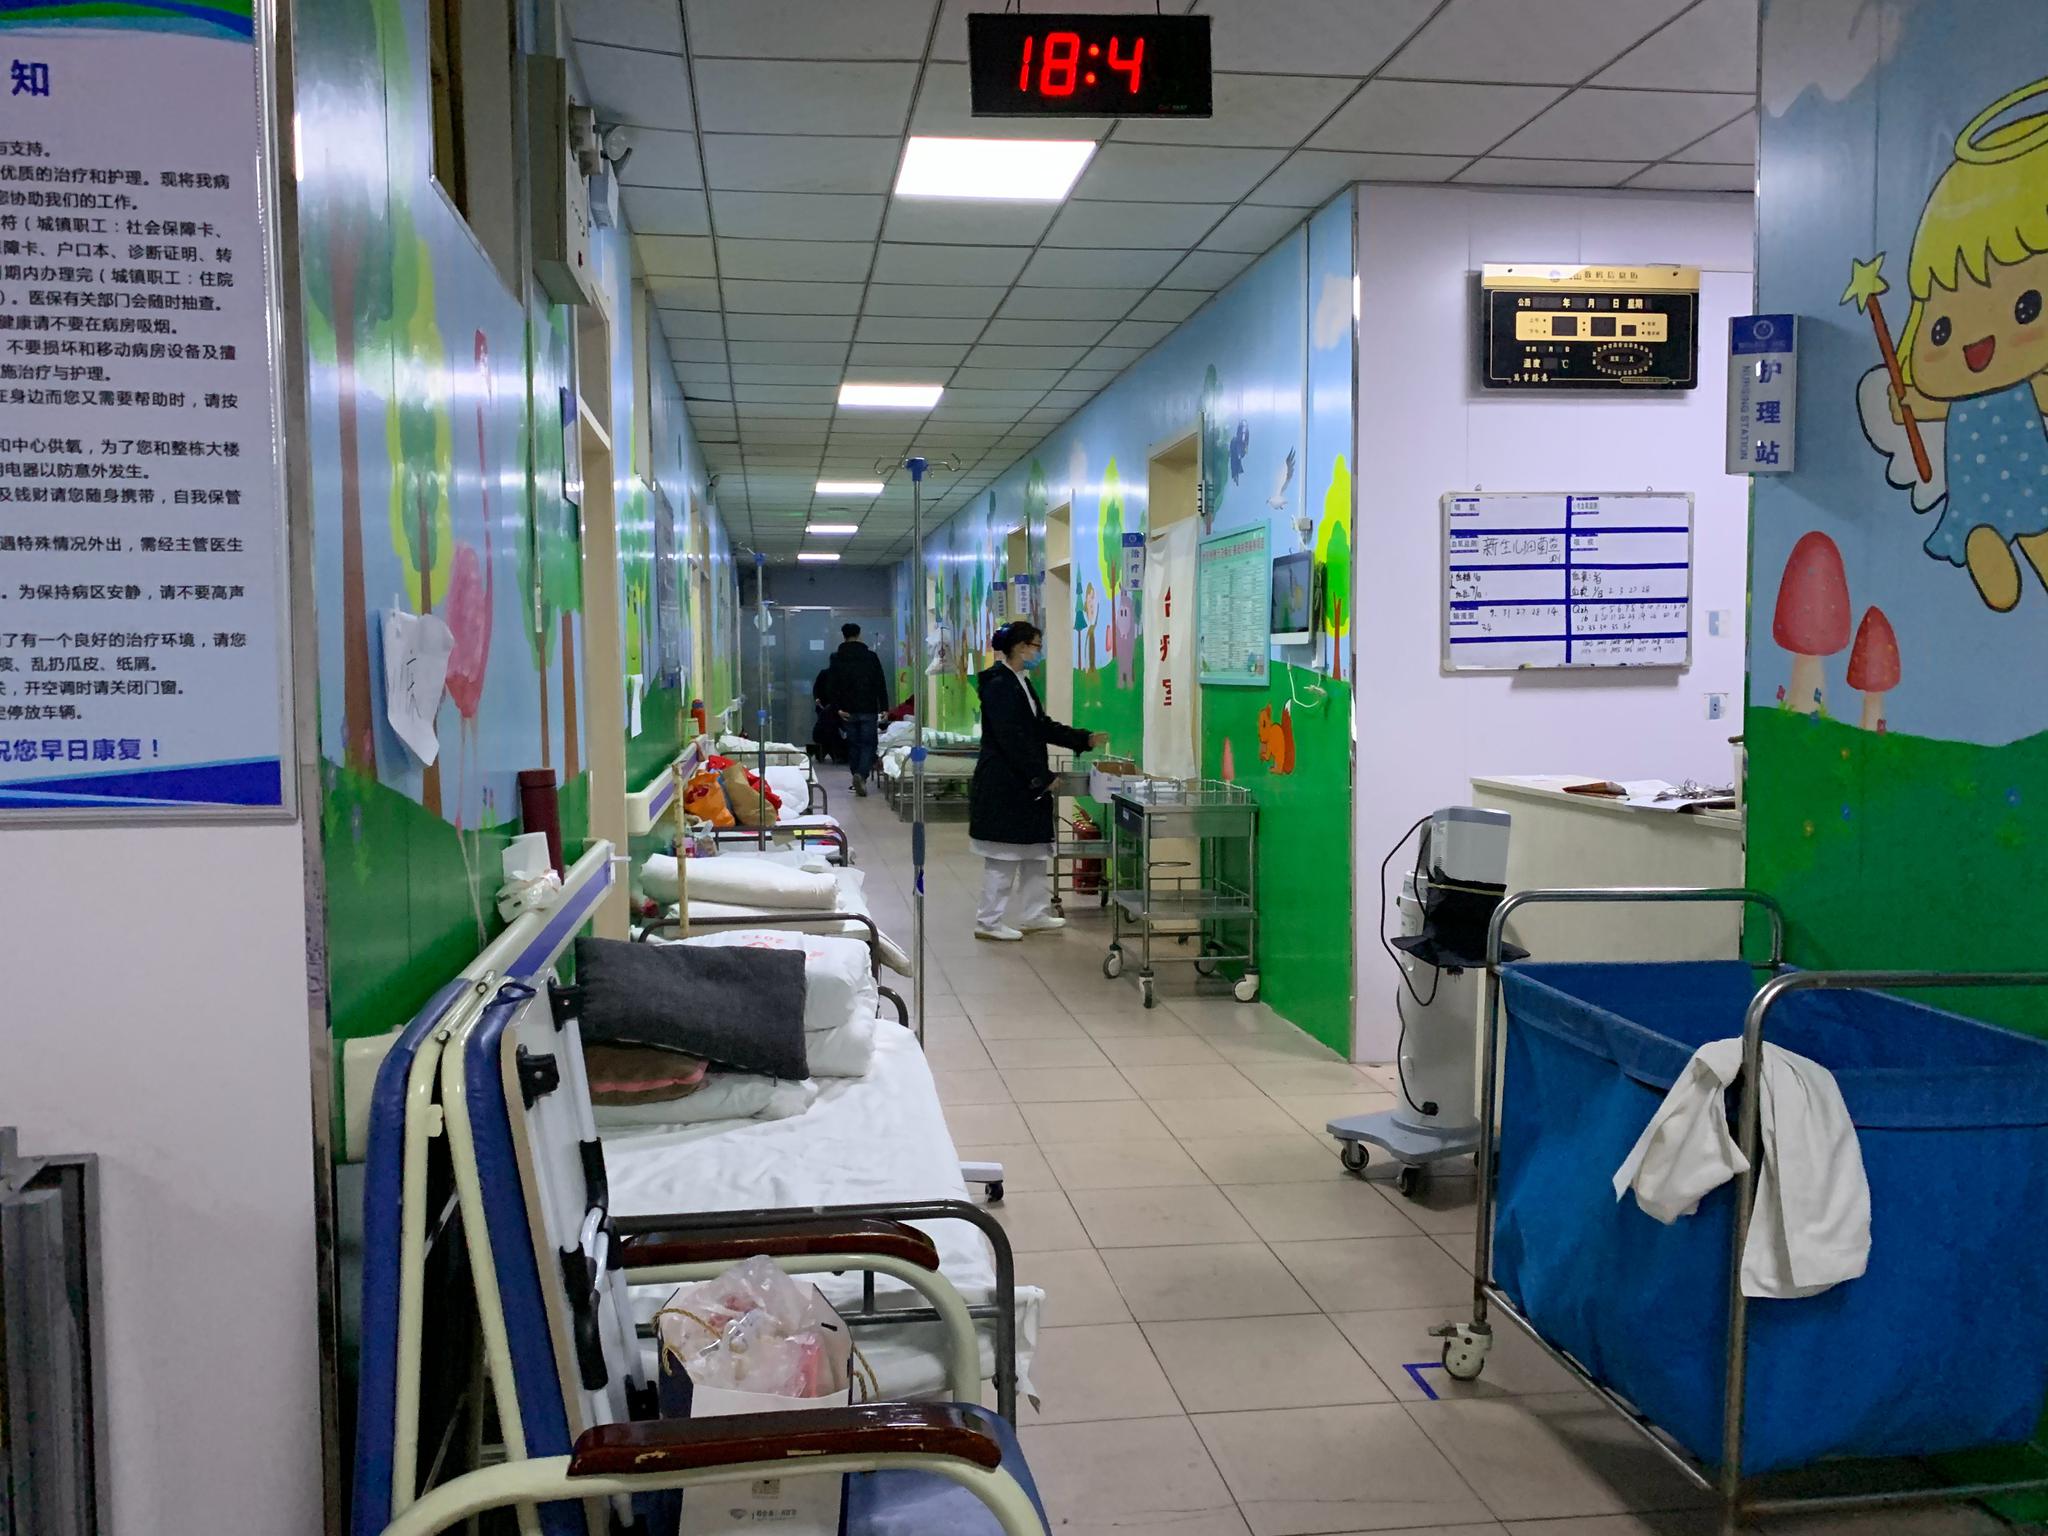 邢台市第一医院夜里临时转移楼道病患